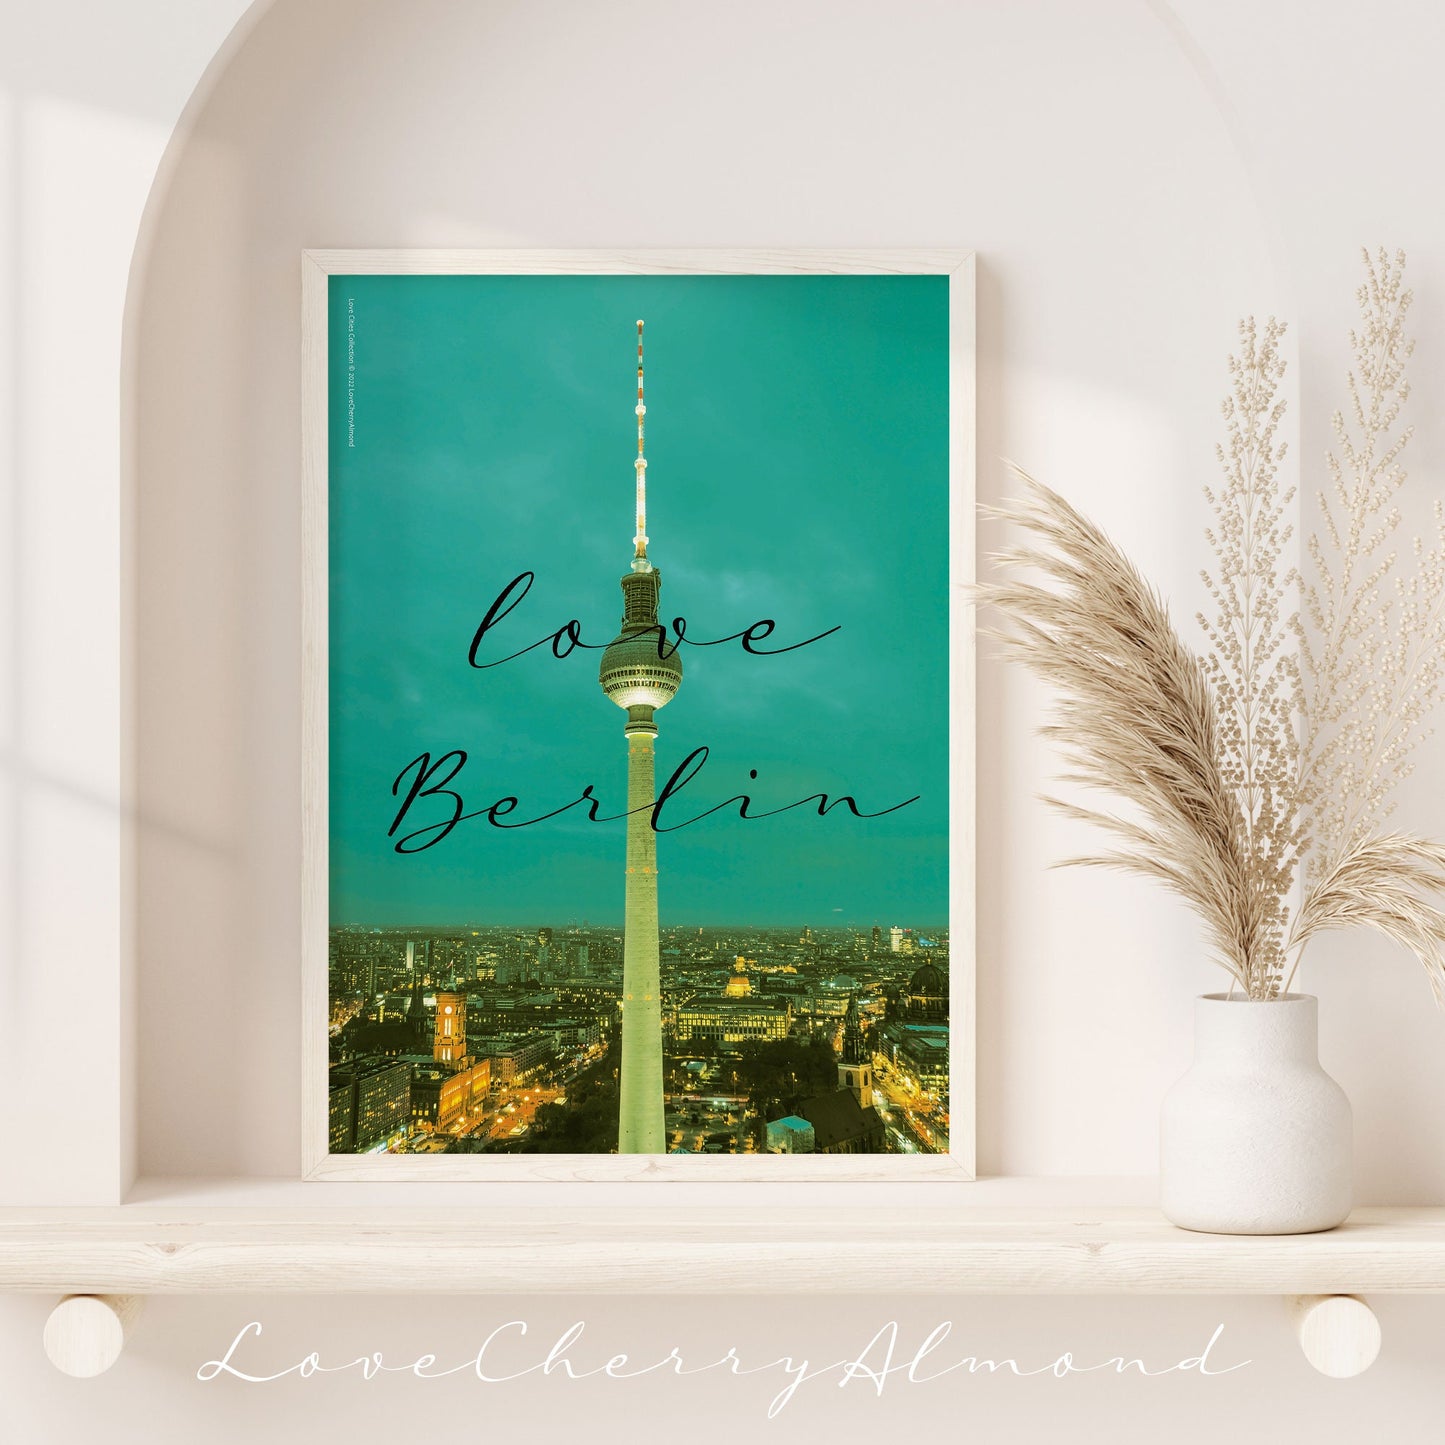 Love Cities Collection "Love Berlin" Digitaldrucke herunterladen